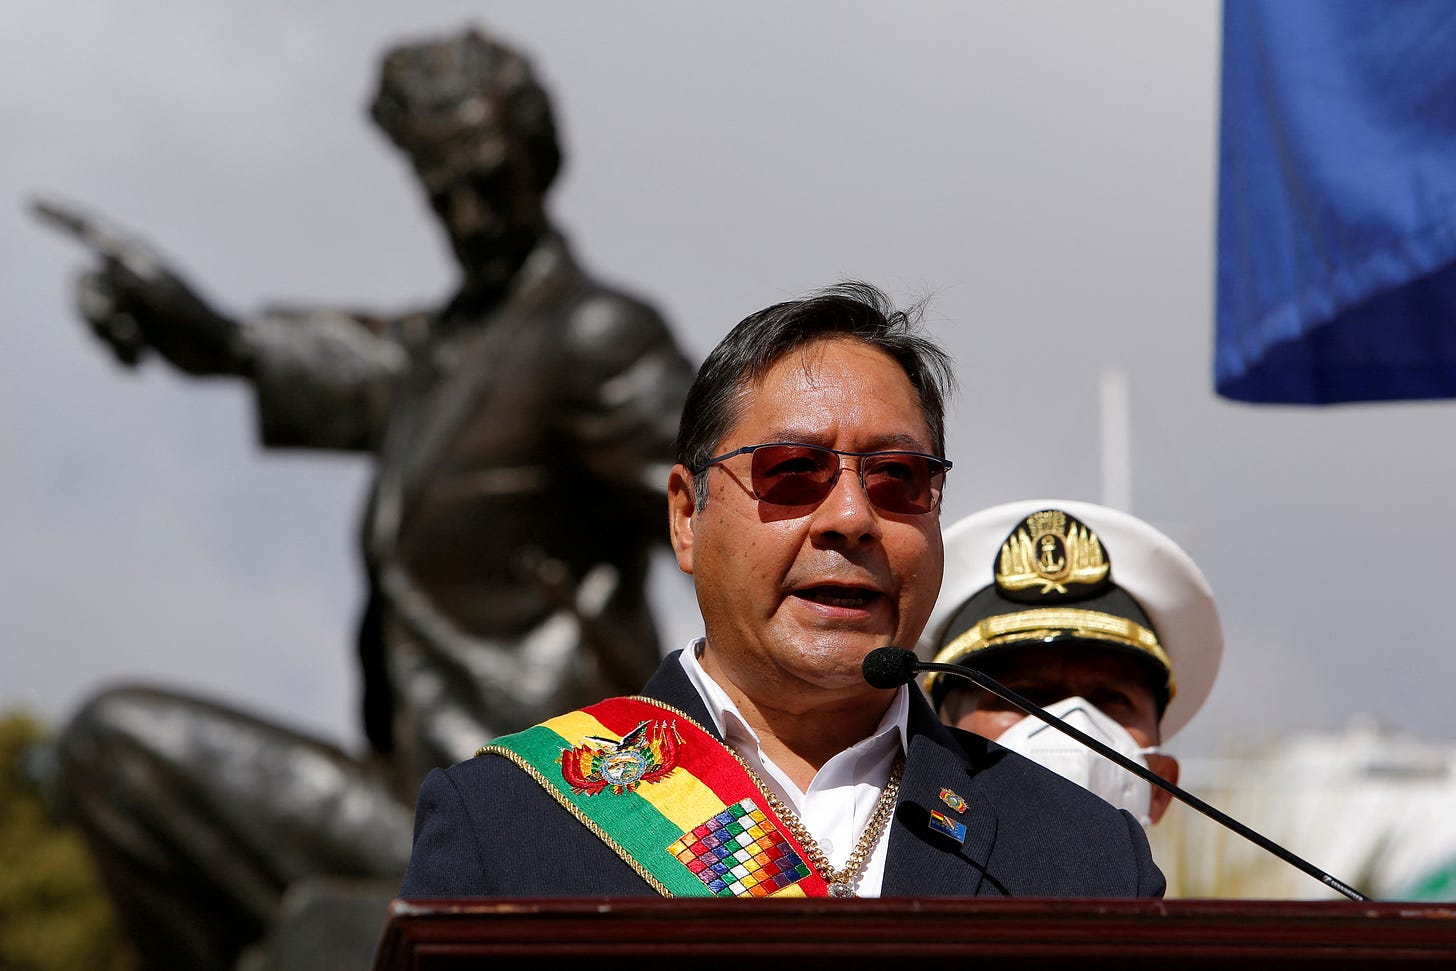 El presidente boliviano Luis Arce en una ceremonia que marca el reclamo del país del acceso marítimo, perdido a Chile después de la Guerra del Pacífico, en una foto del 23 de marzo 2022 (REUTERS/Manuel Claure/archivo)